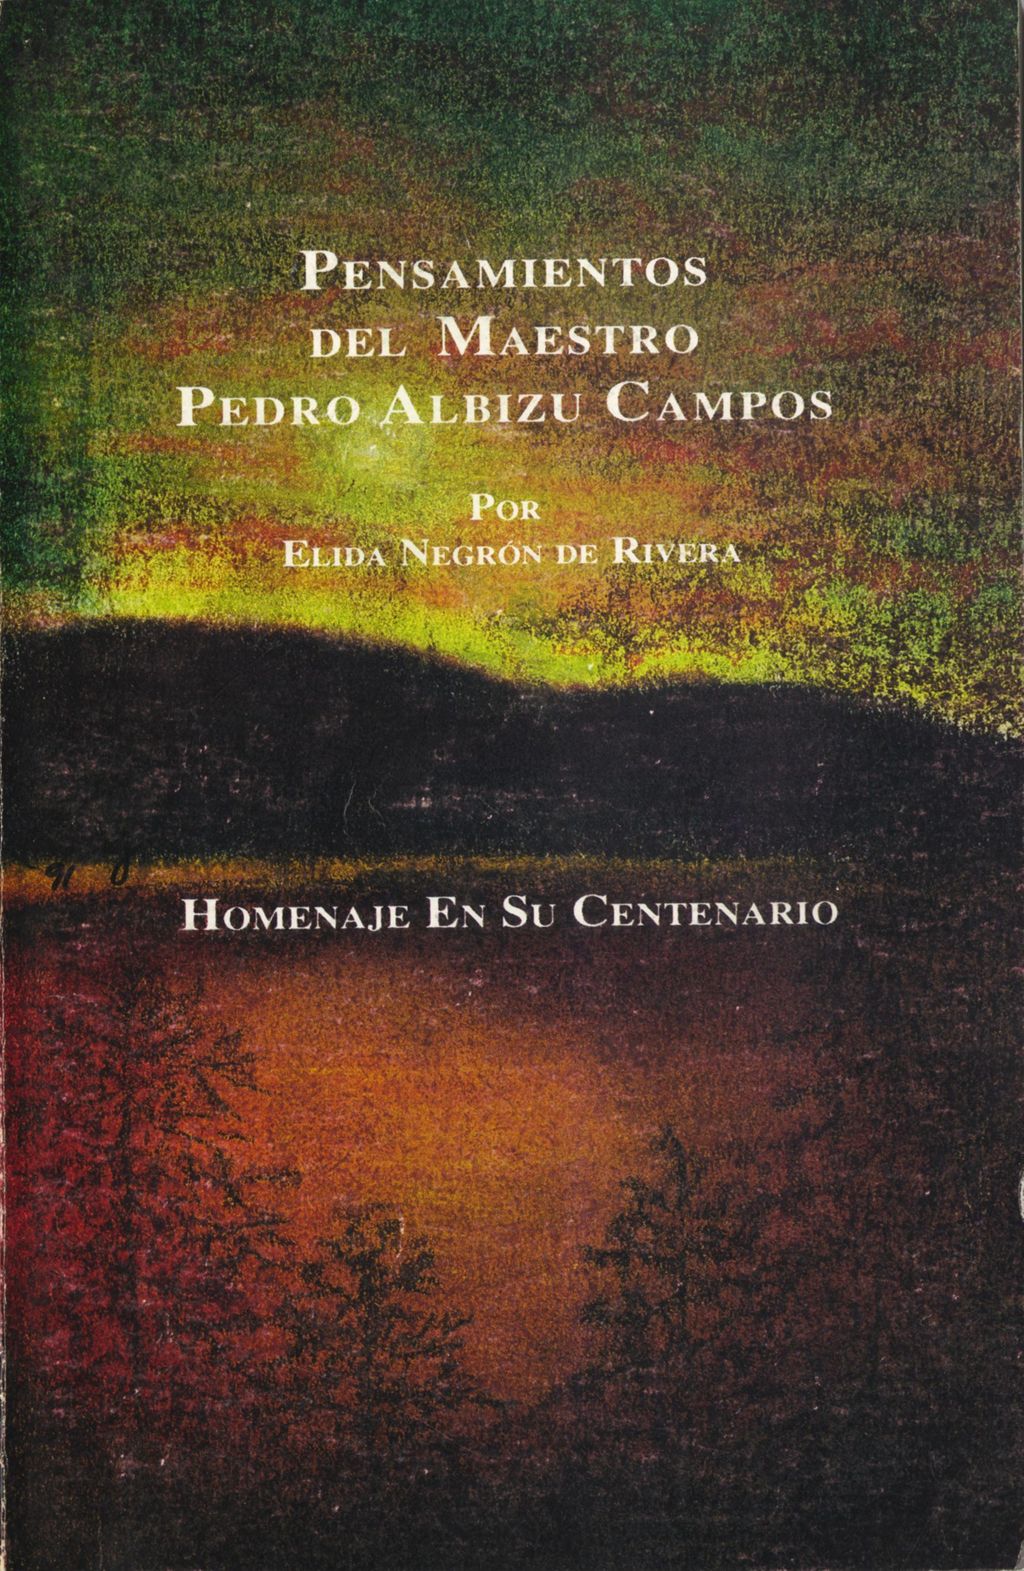 Miniature of Pensamientos del Maestro Pedro Albizu Campos (Selected pages)